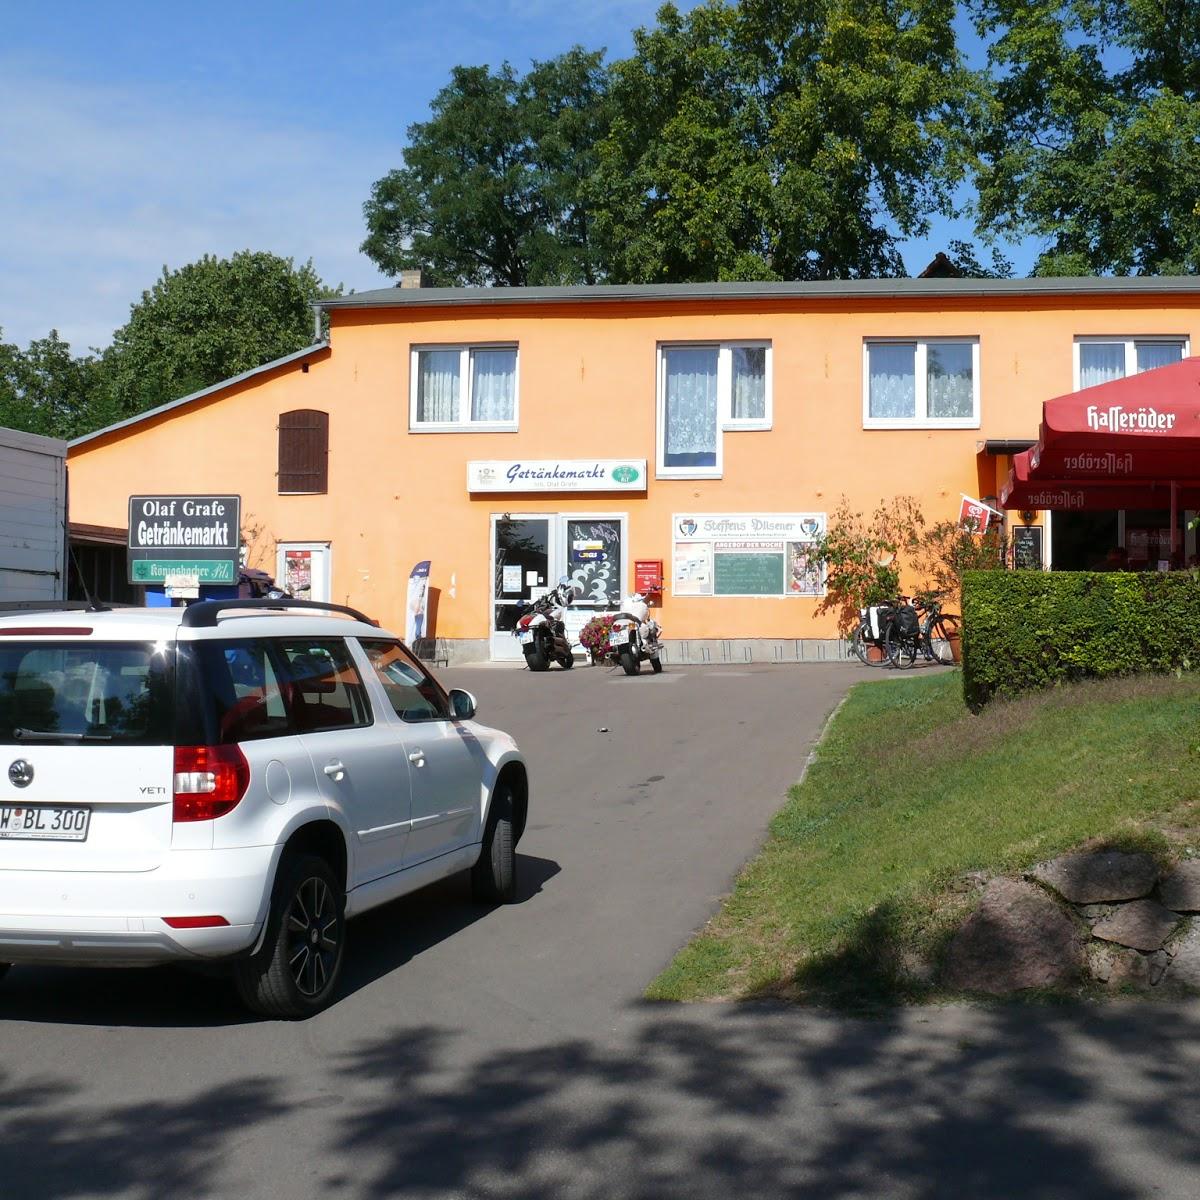 Restaurant "Gasthof an der Oder" in Bad Freienwalde (Oder)